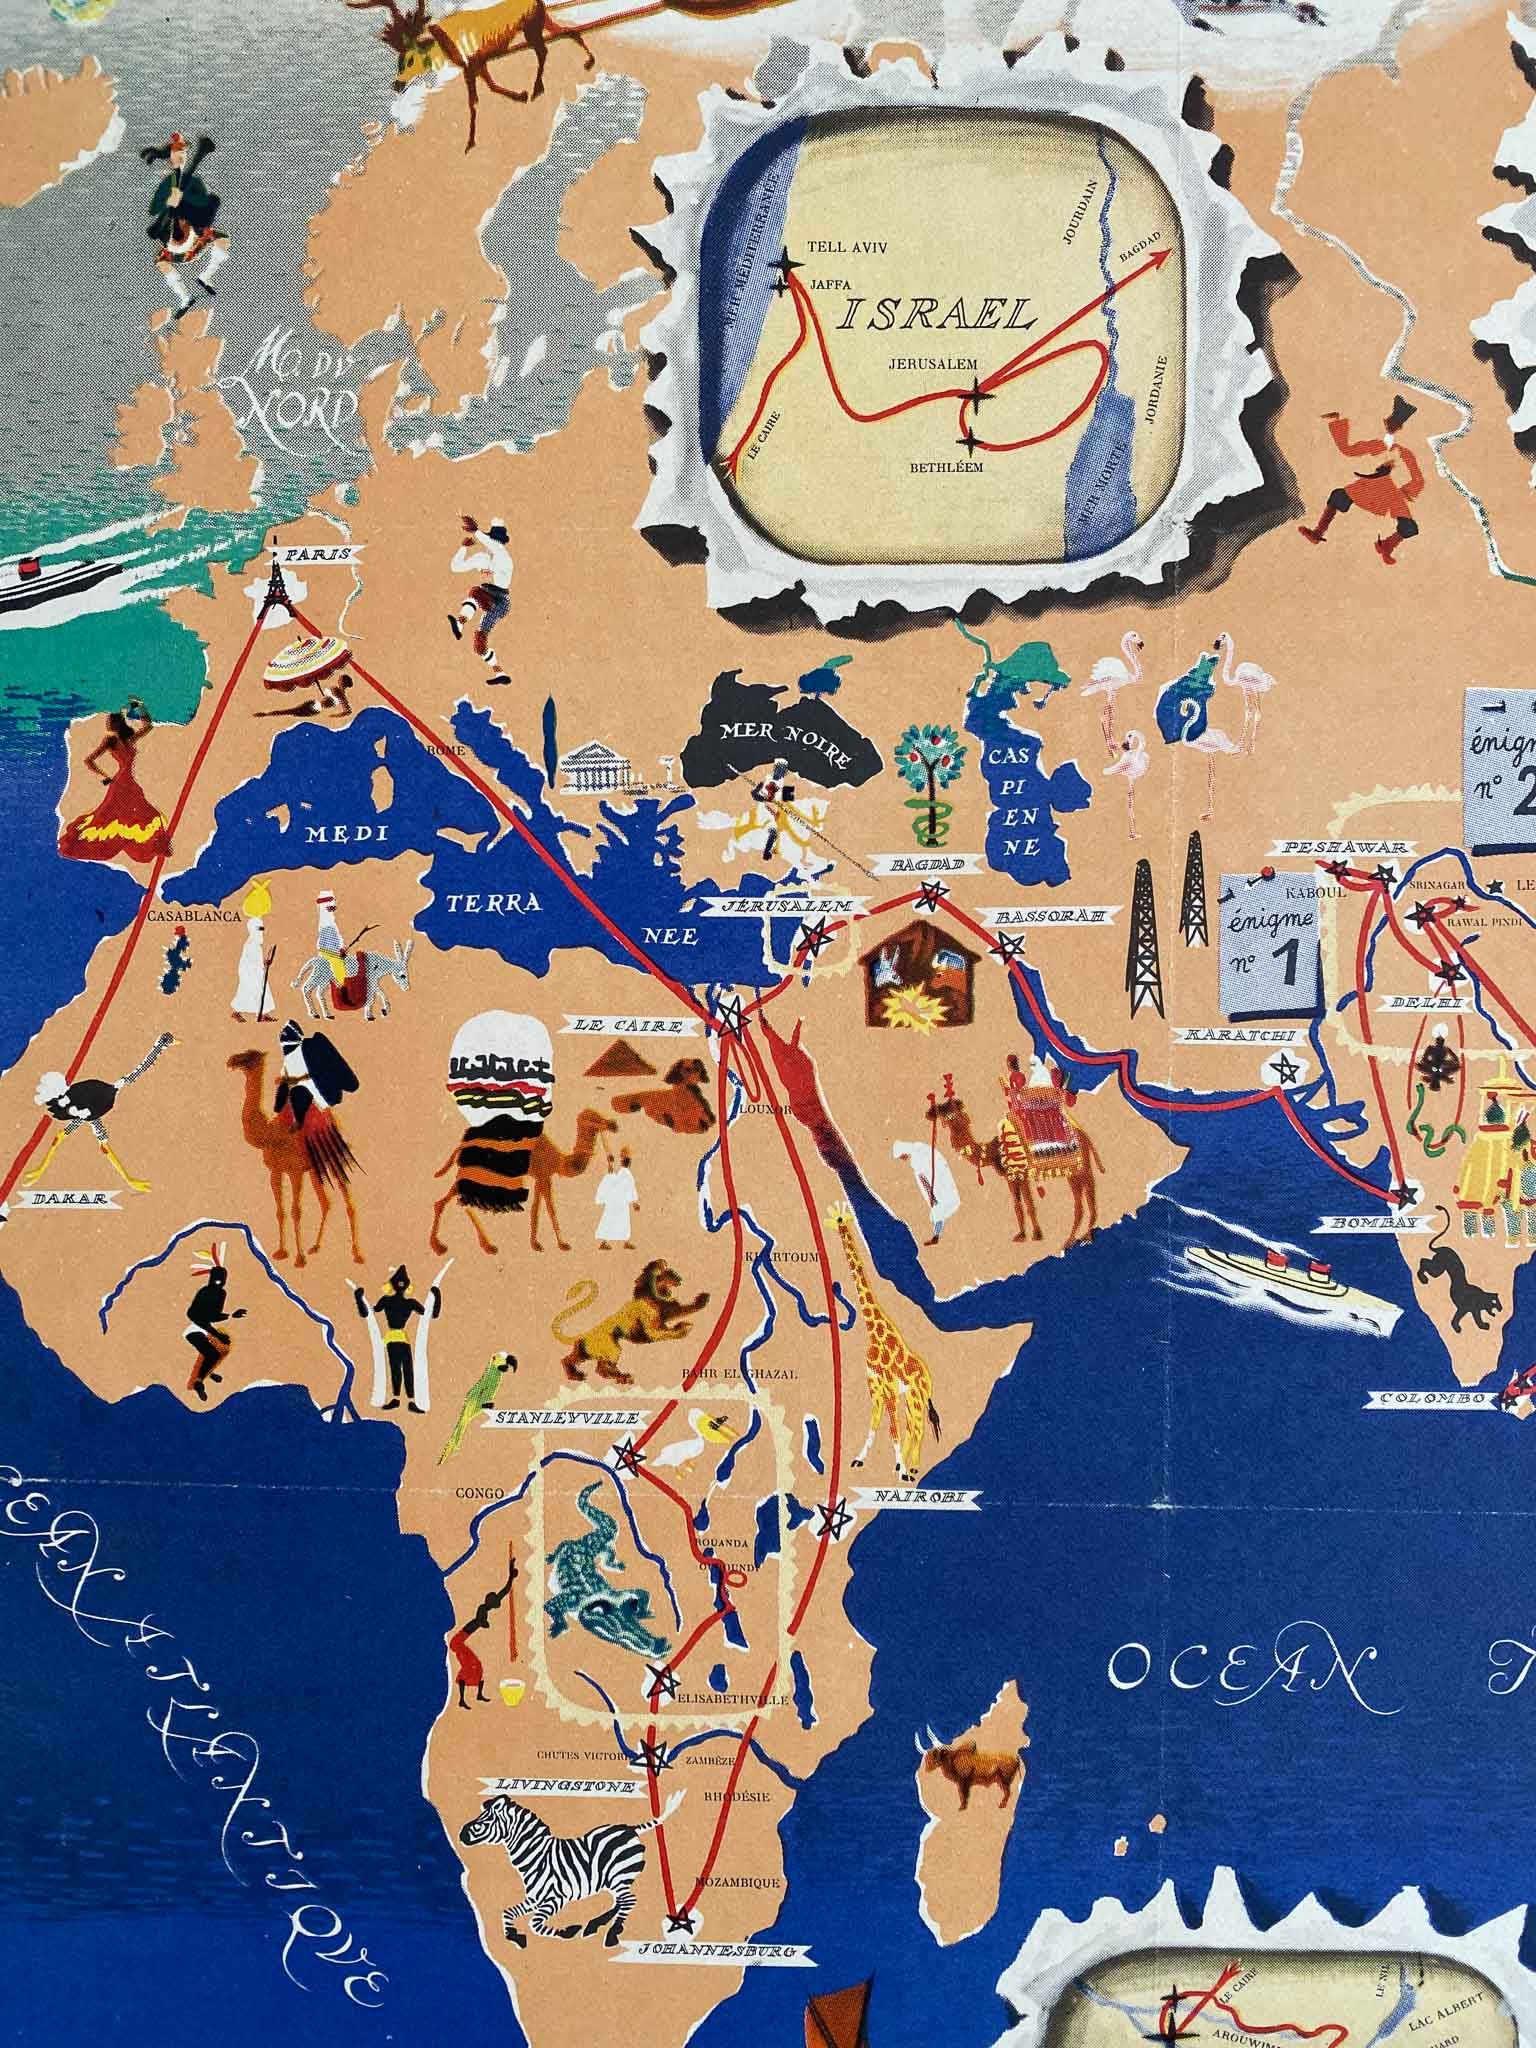 Planisphère Chocolat Menier "Le tour du monde" Par J.B Jannot, 1955     Superbe Planisphère - Carte  Chocolat Menier  Trés decoratif, idéal pour la decoration d'une chambre ou d'un bureau 